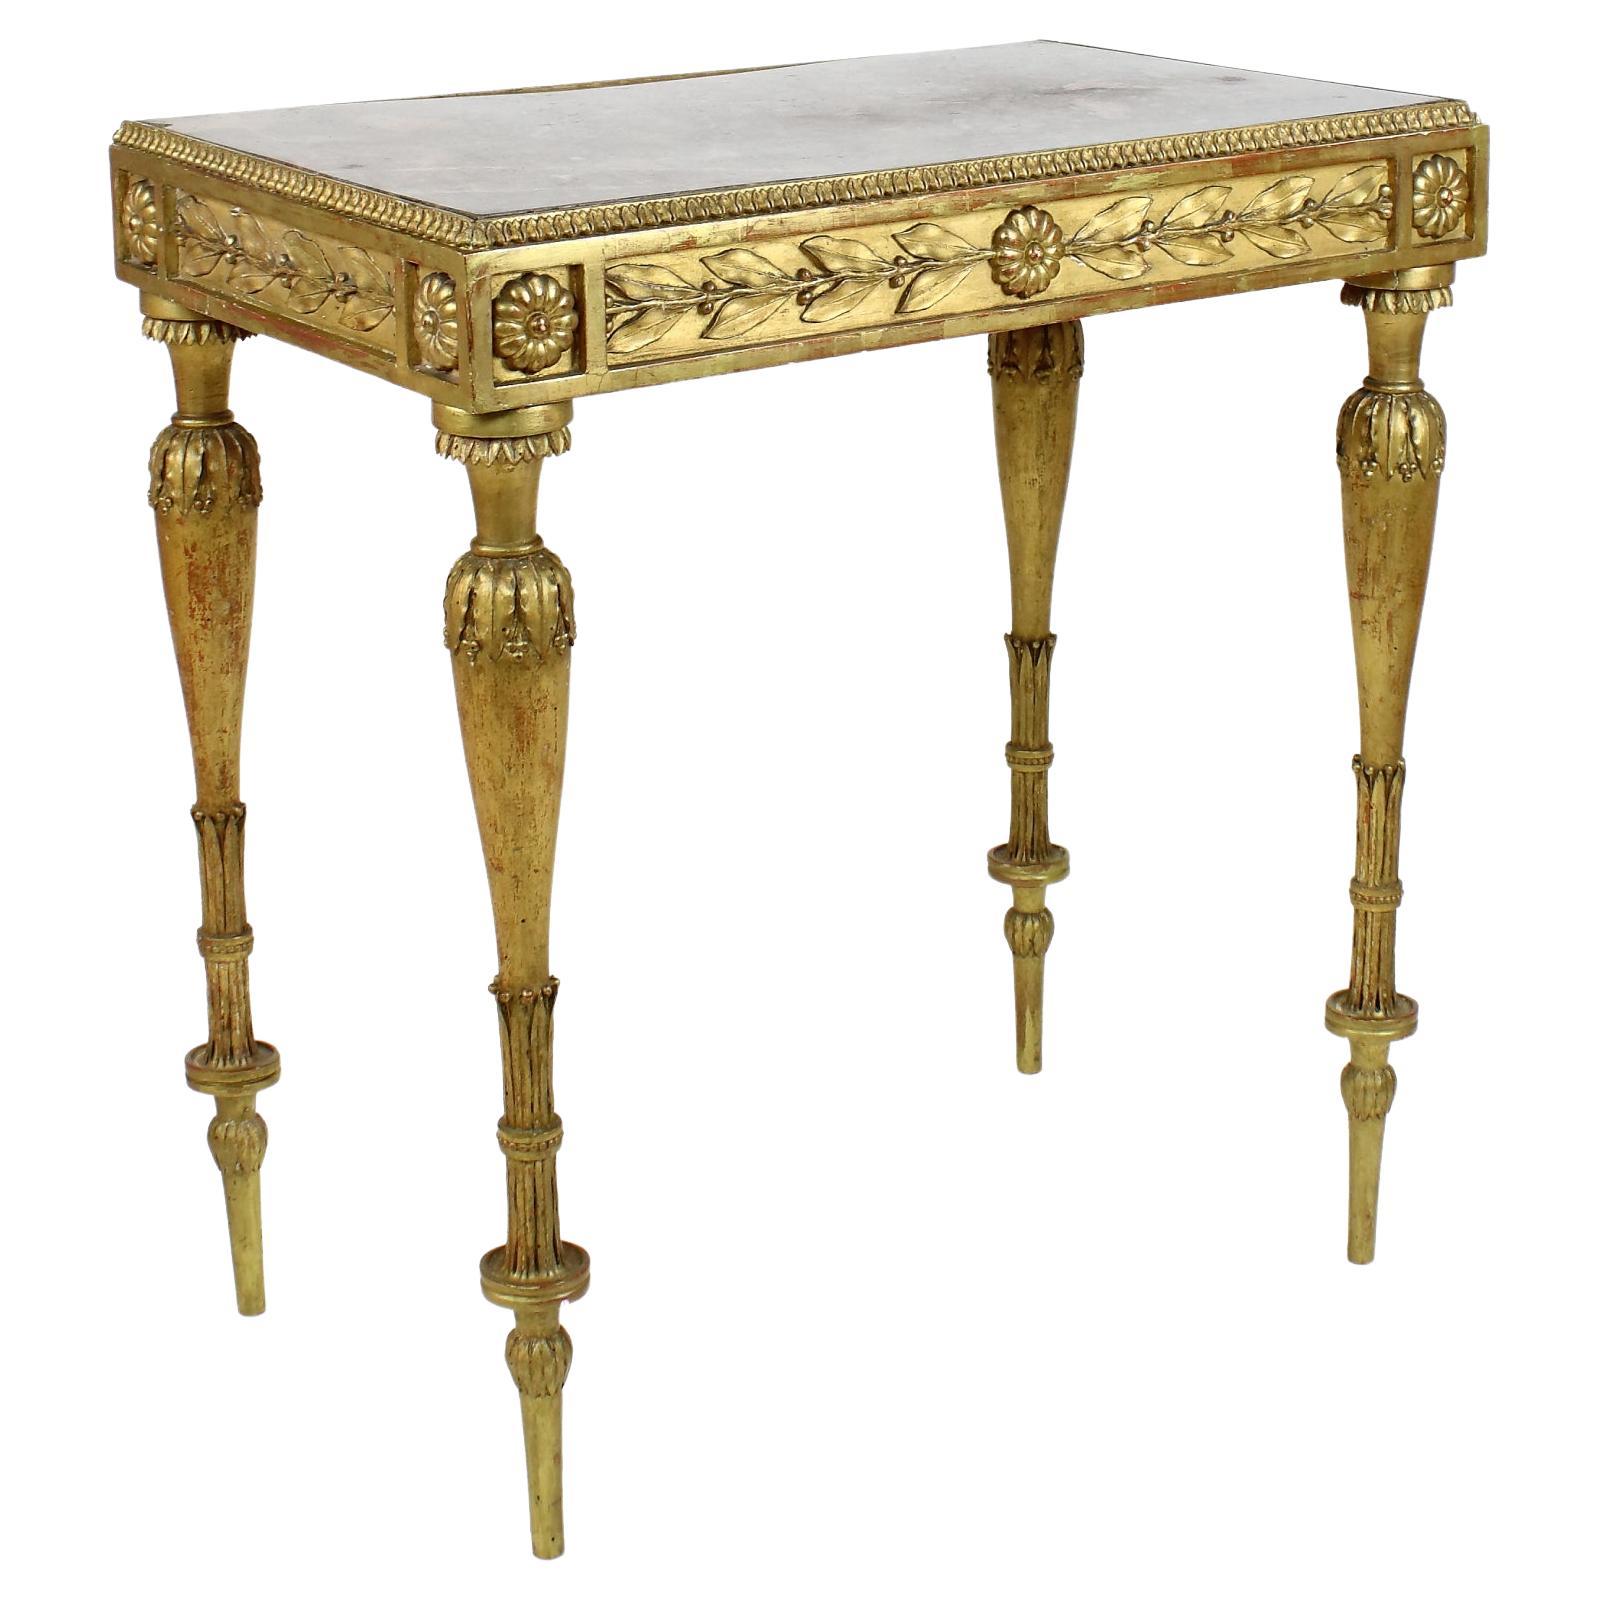 Table centrale en bois doré du XIXe siècle de style Napoléon III / Louis XVI